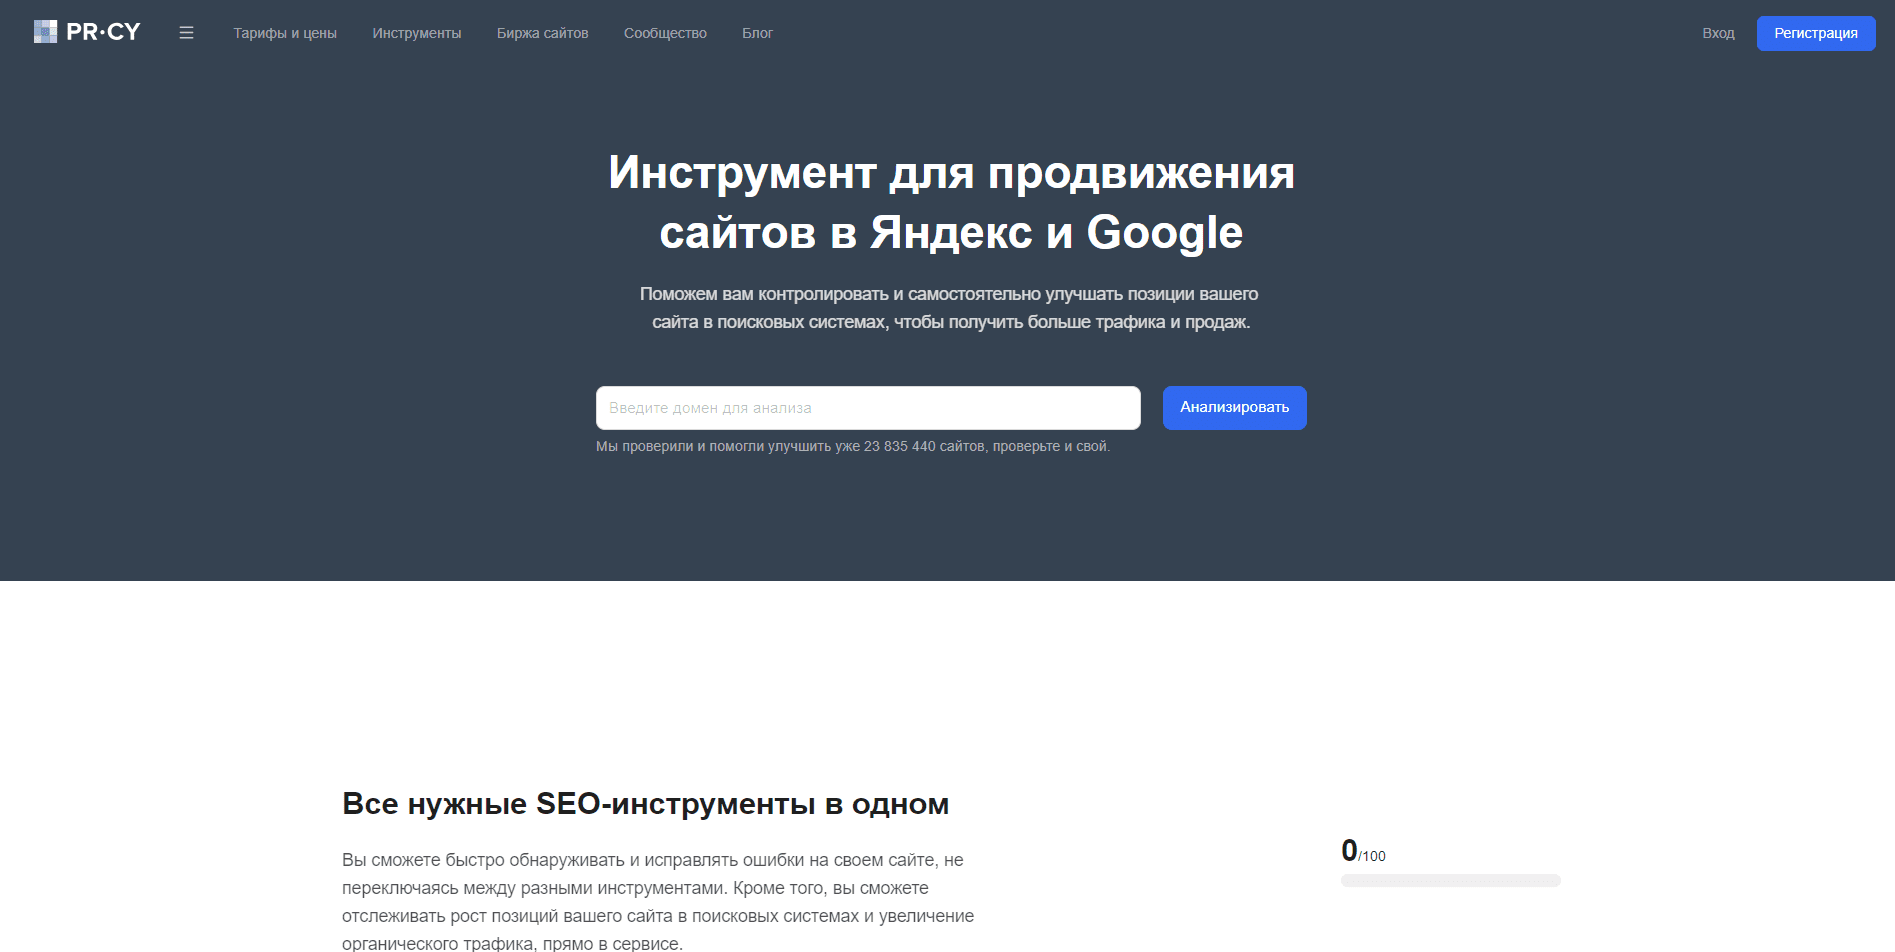 Pr-cy.ru - инструмент для продвижения сайтов в Яндекс и Google.